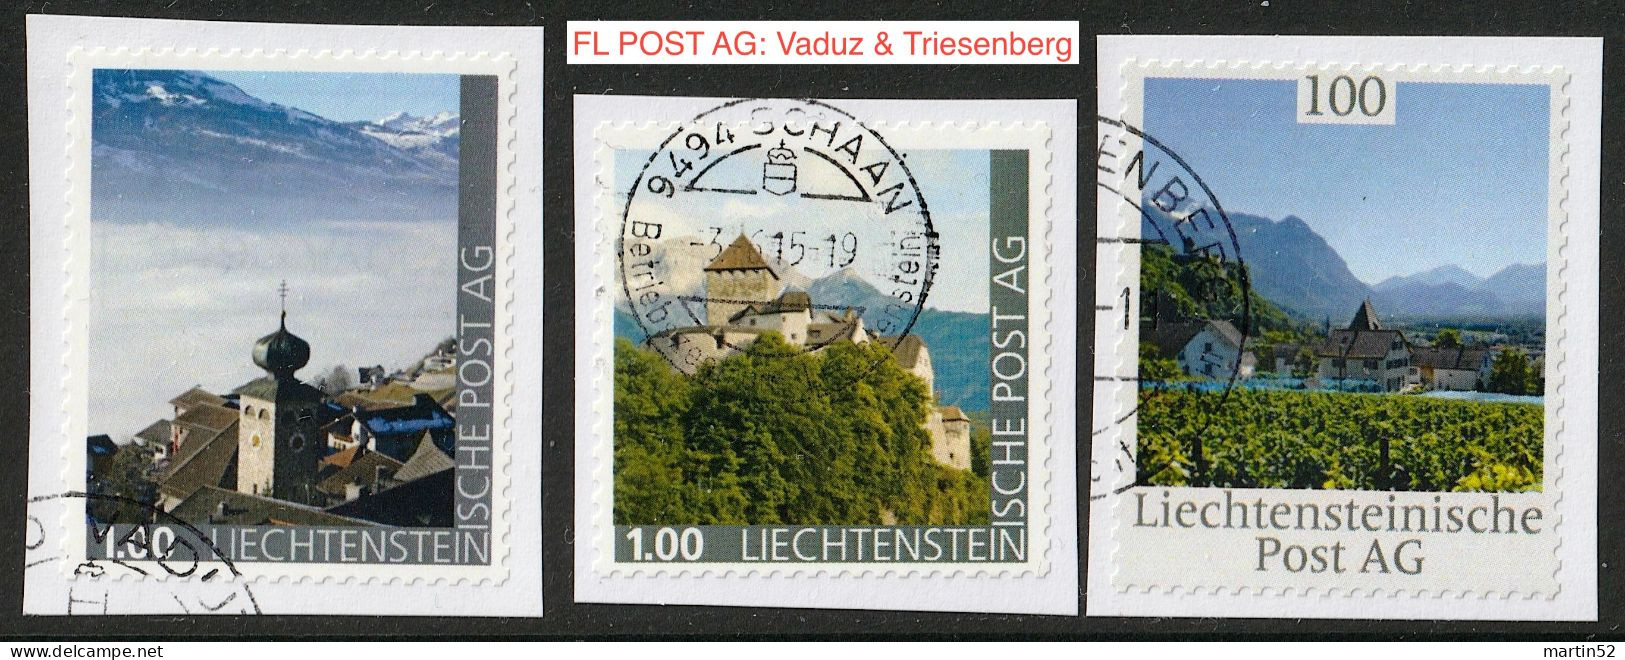 Liechtenstein 2015: Ausgabe Der FL POST AG "Sujets Aus Vaduz & Triesenberg" Mit ⊙ Von SCHAAN, VADUZ & TRIESENBERG - Abarten